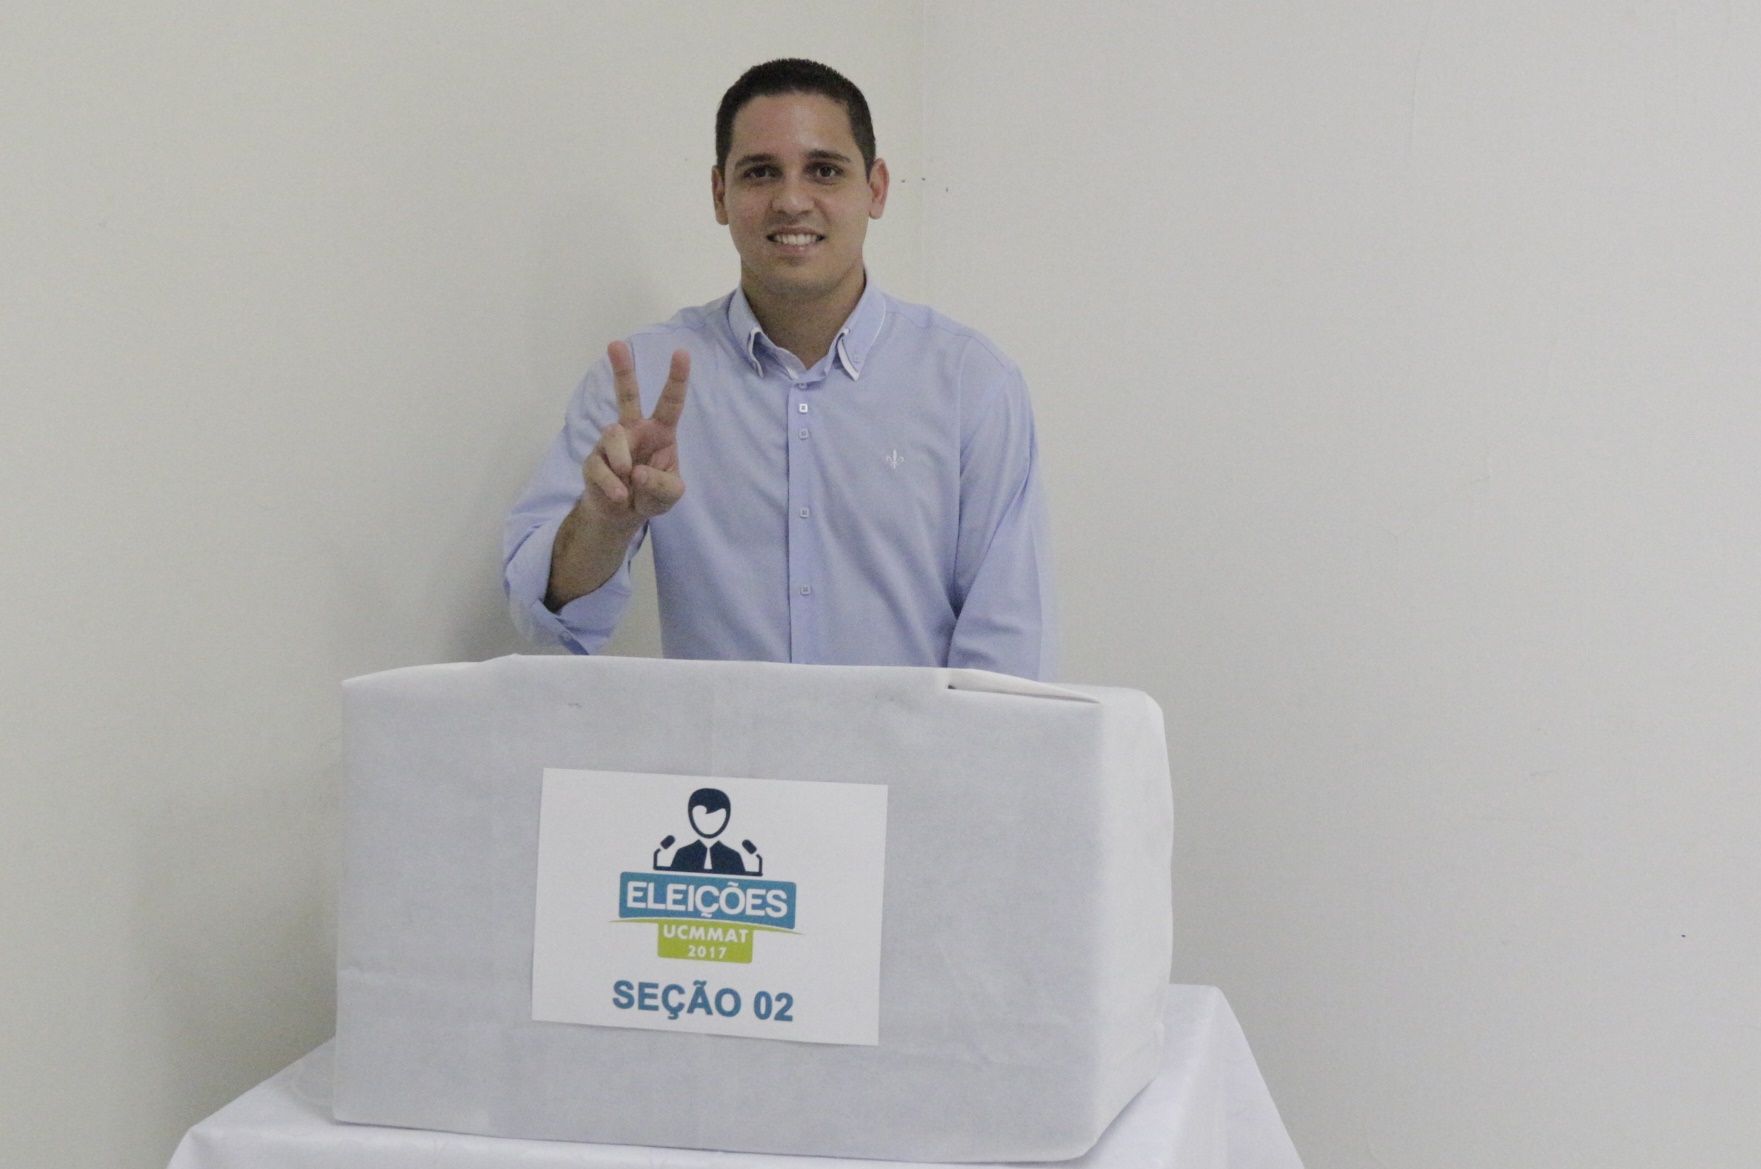 Vereador, Rafael Piovezan é eleito presidente da UCMMAT.